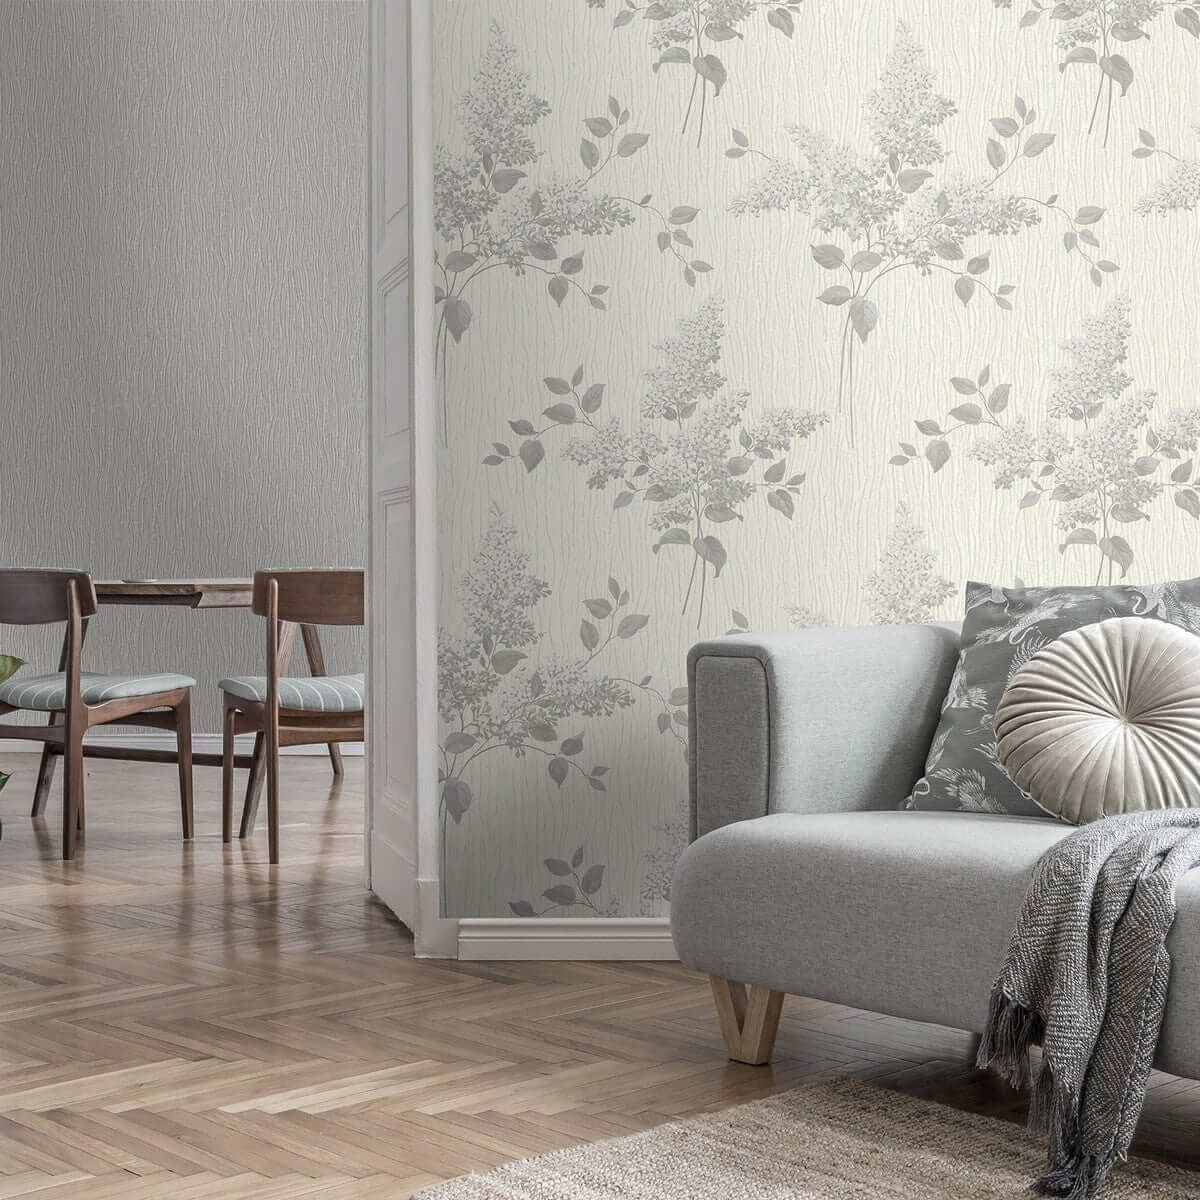 Wallpaper  -  Belgravia Tiffany Fiore Soft Silver Wallpaper - GB41312  -  60002011